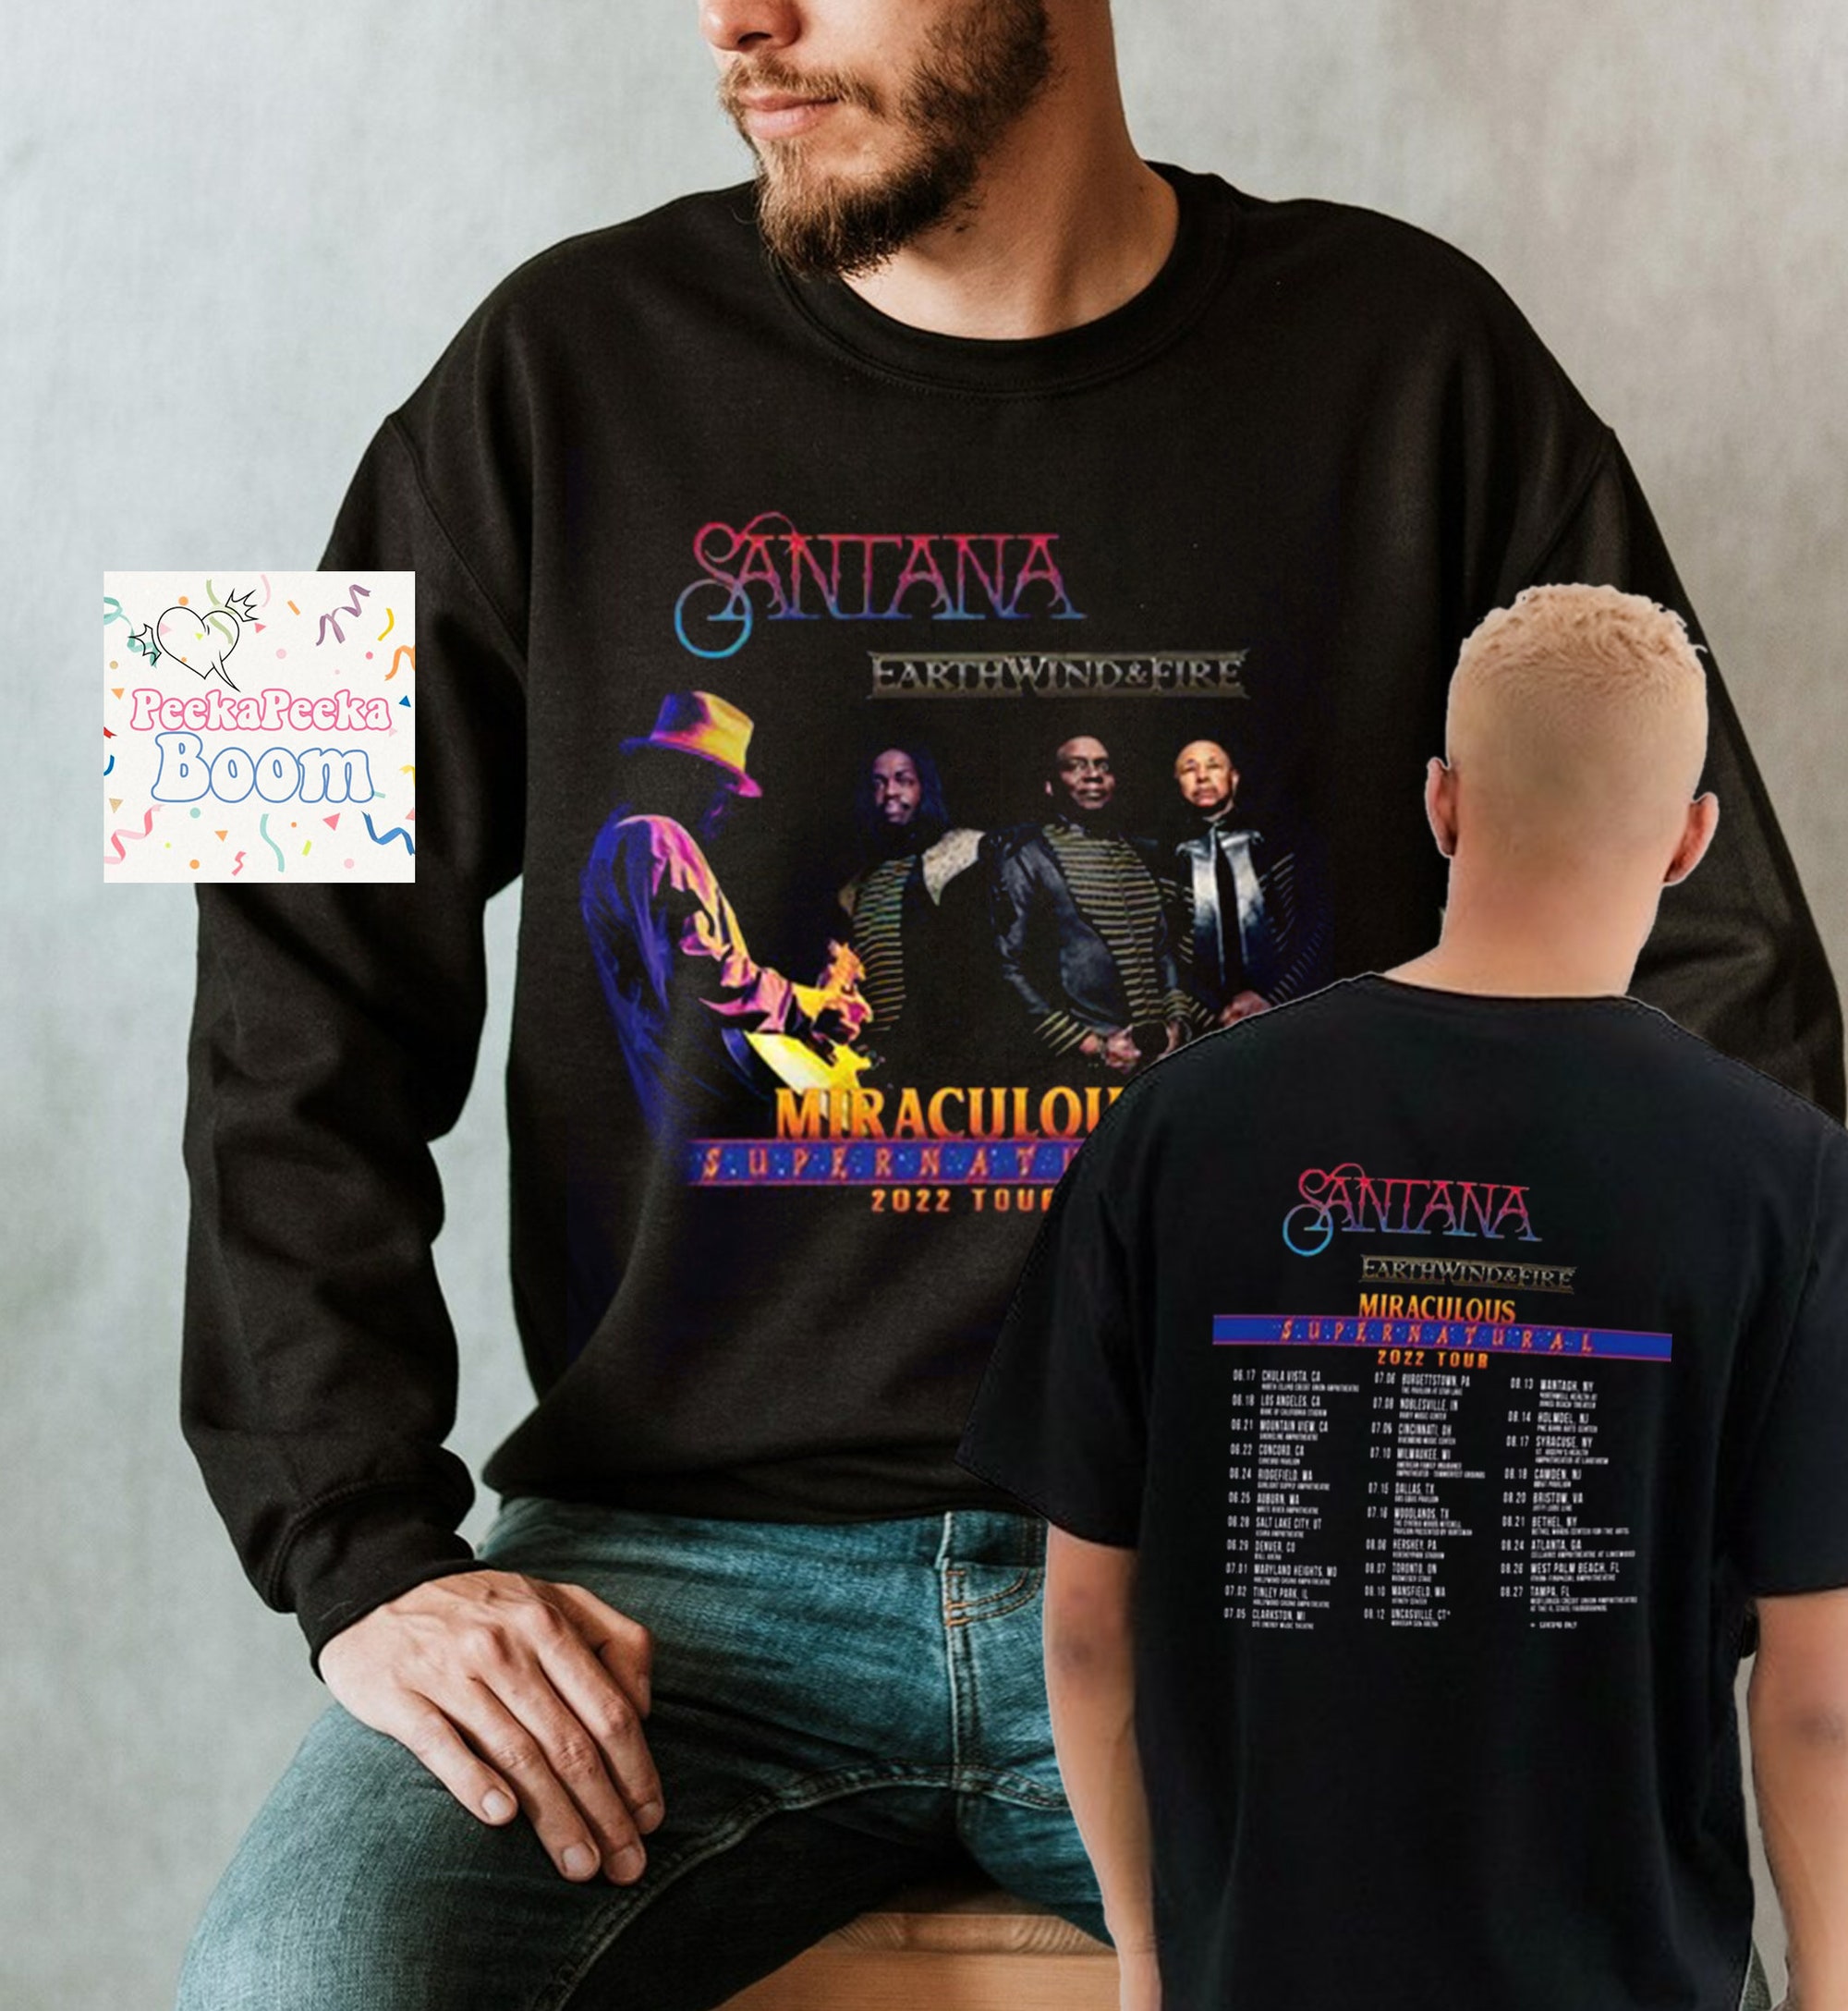 Santana Earth T-Shirt, Wind & Fire Miraculous Supernatural Tour 2022 T-shirt